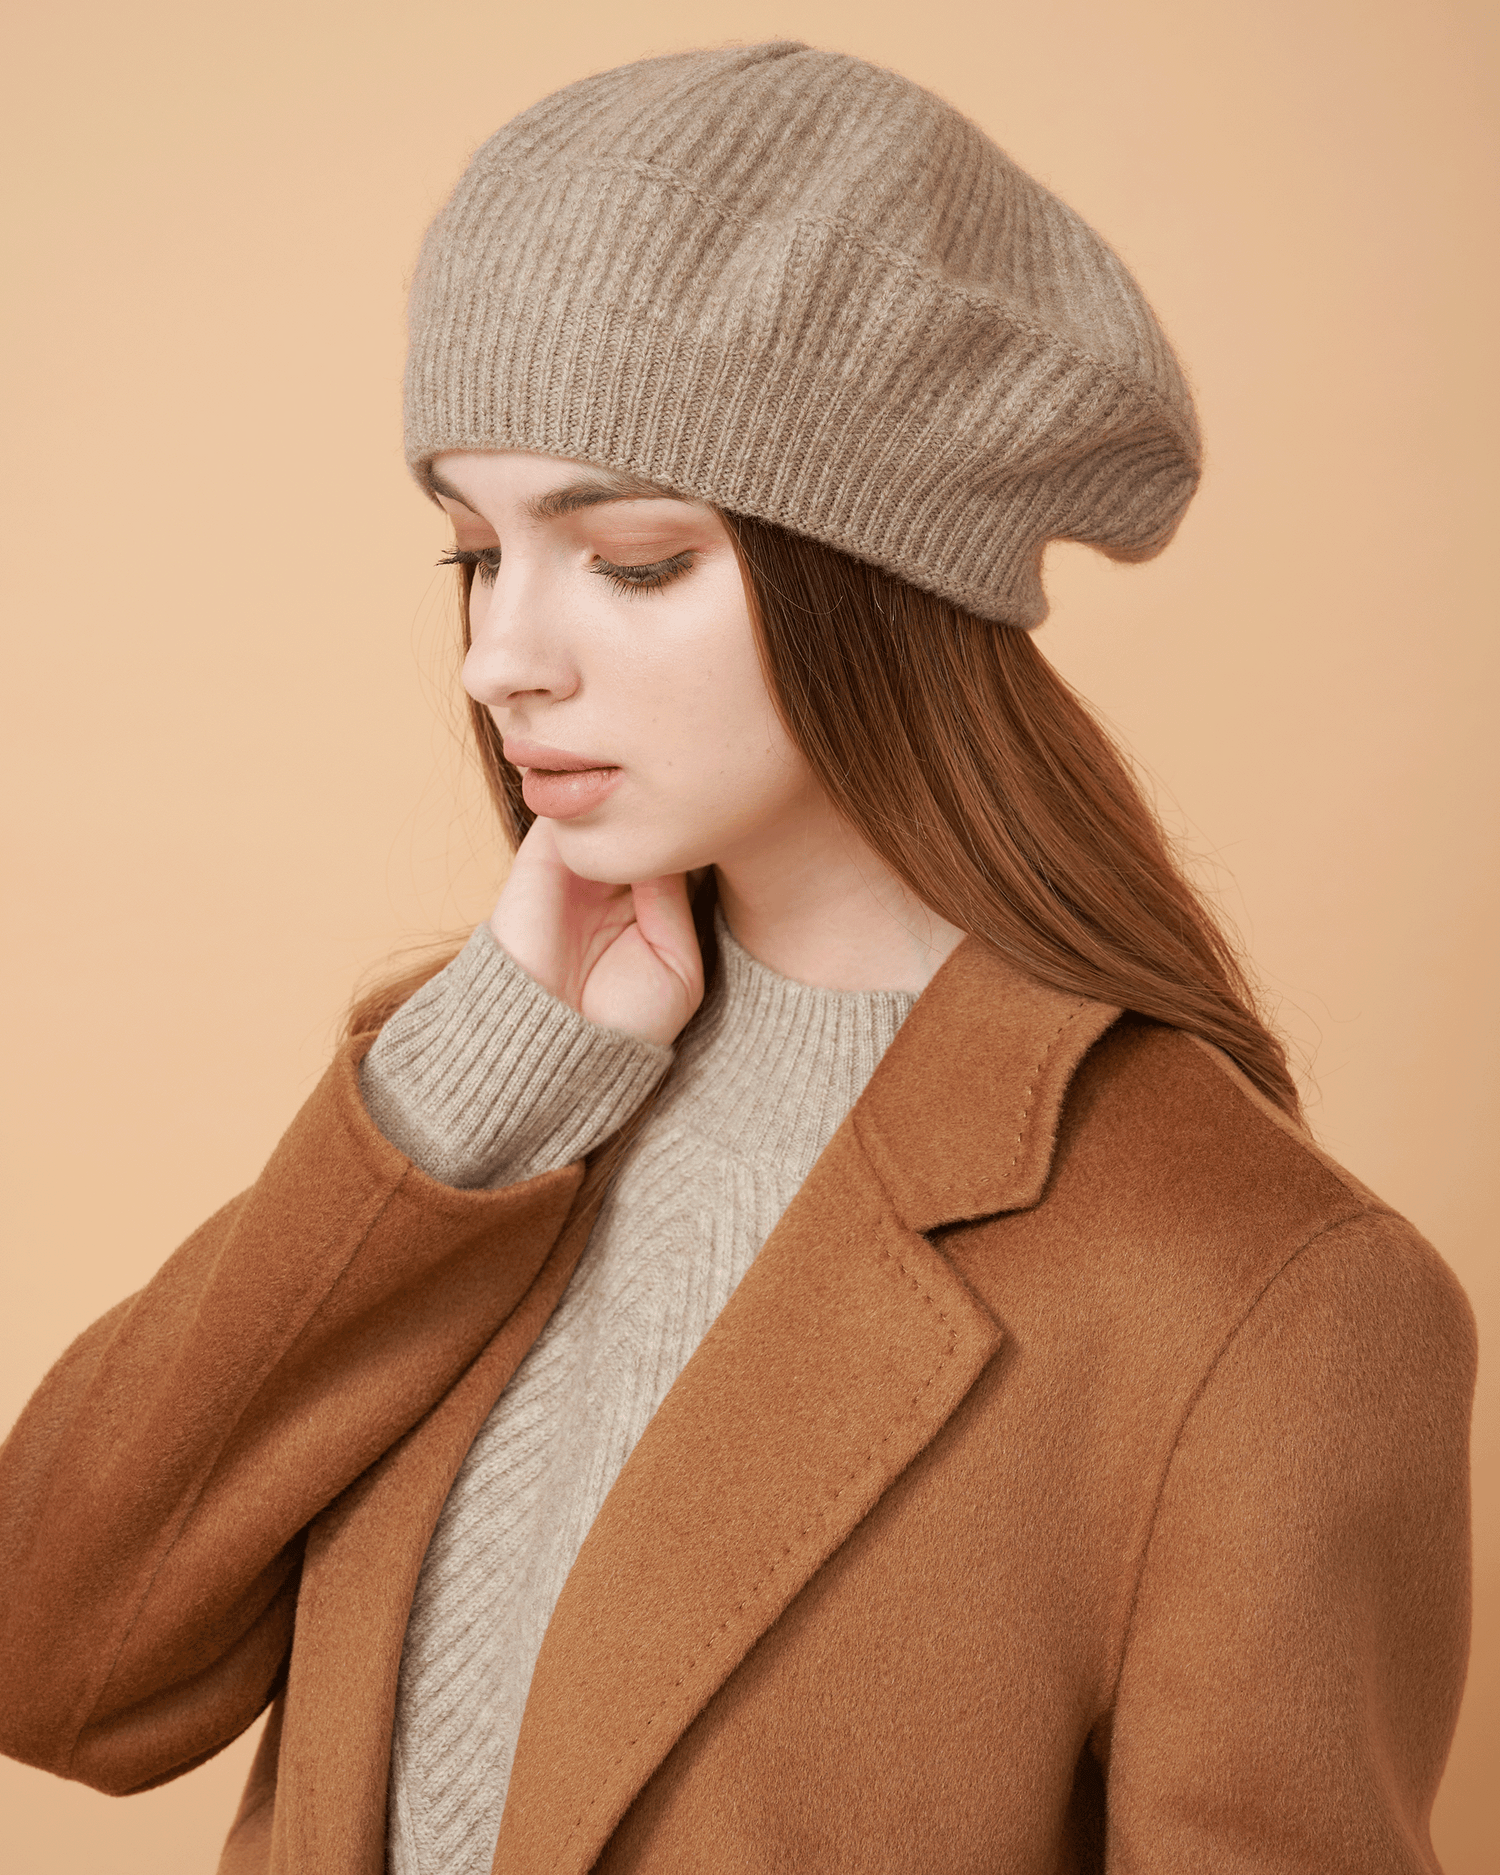 blazer cashmere luxurious style elegant essentials collection knitwear beige design fashion blog winter fashionista design